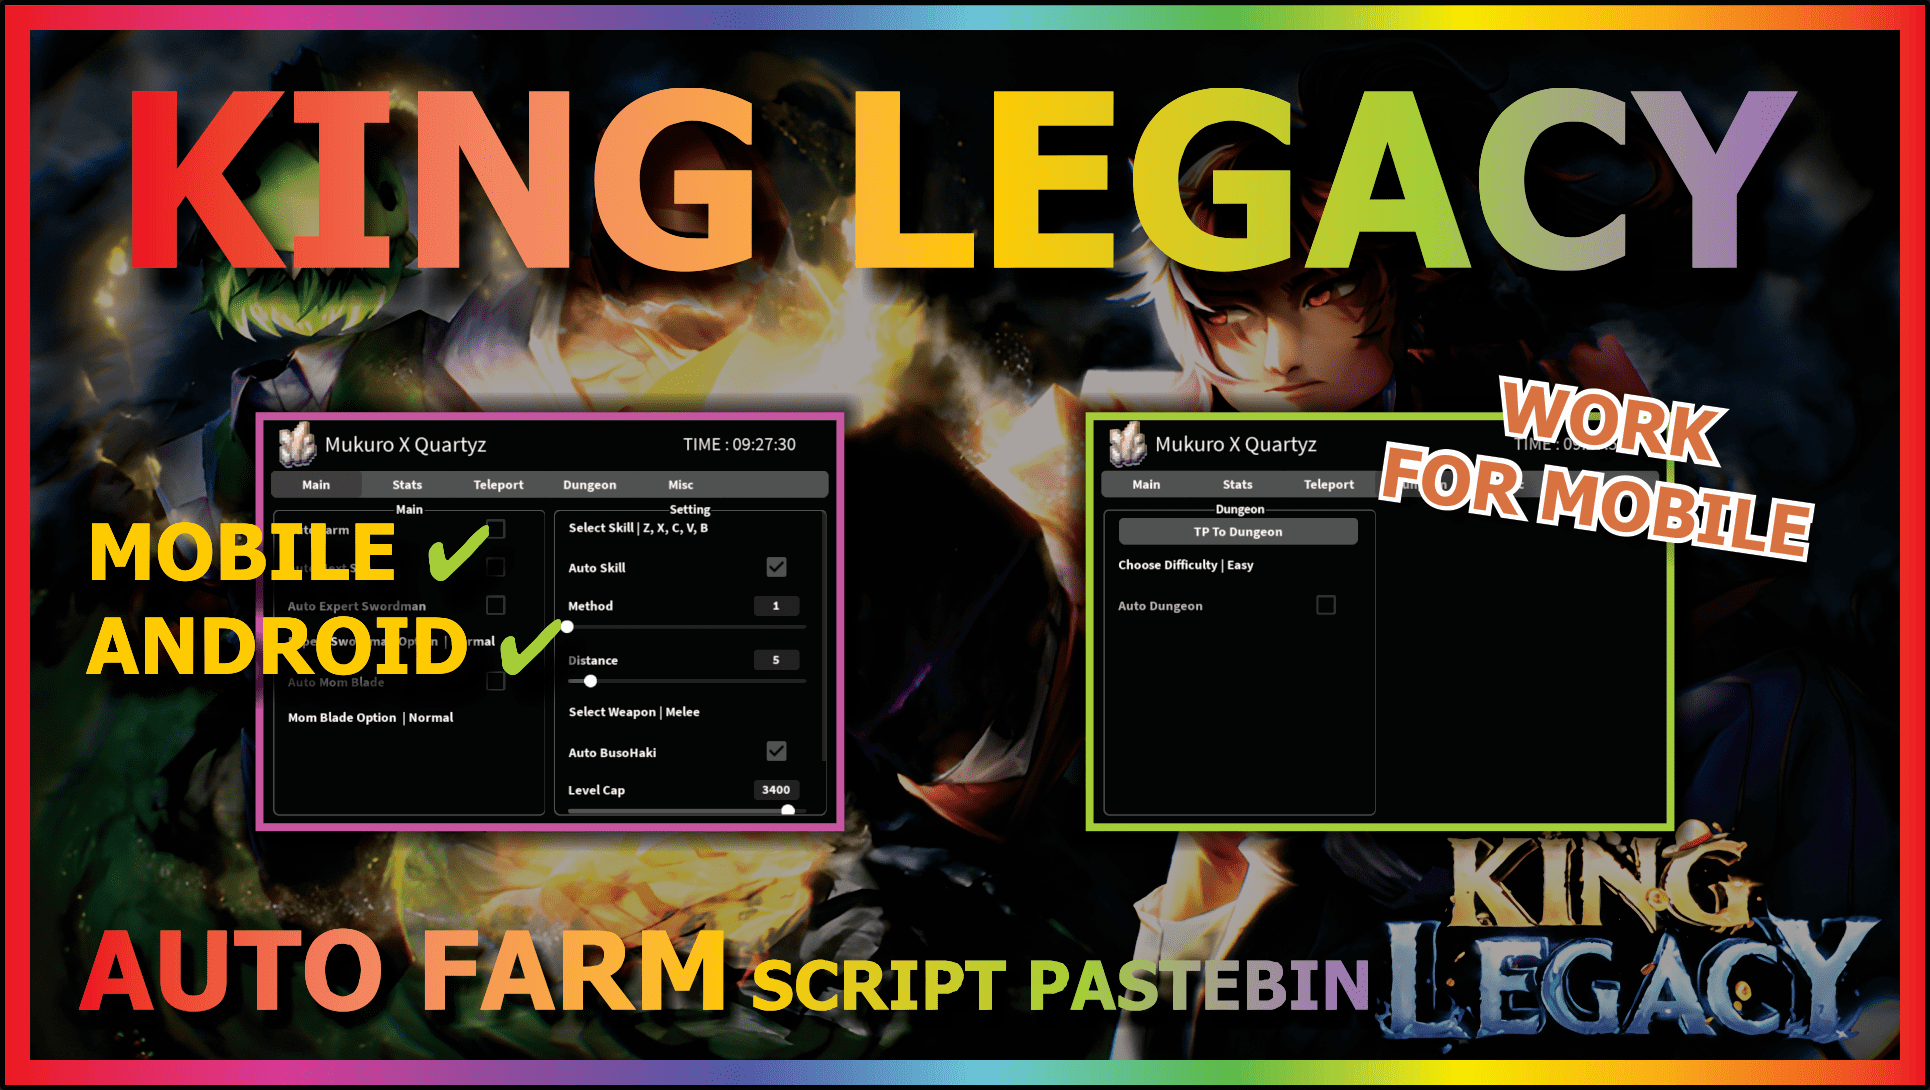 King Legacy Script Update 4 – ScriptPastebin